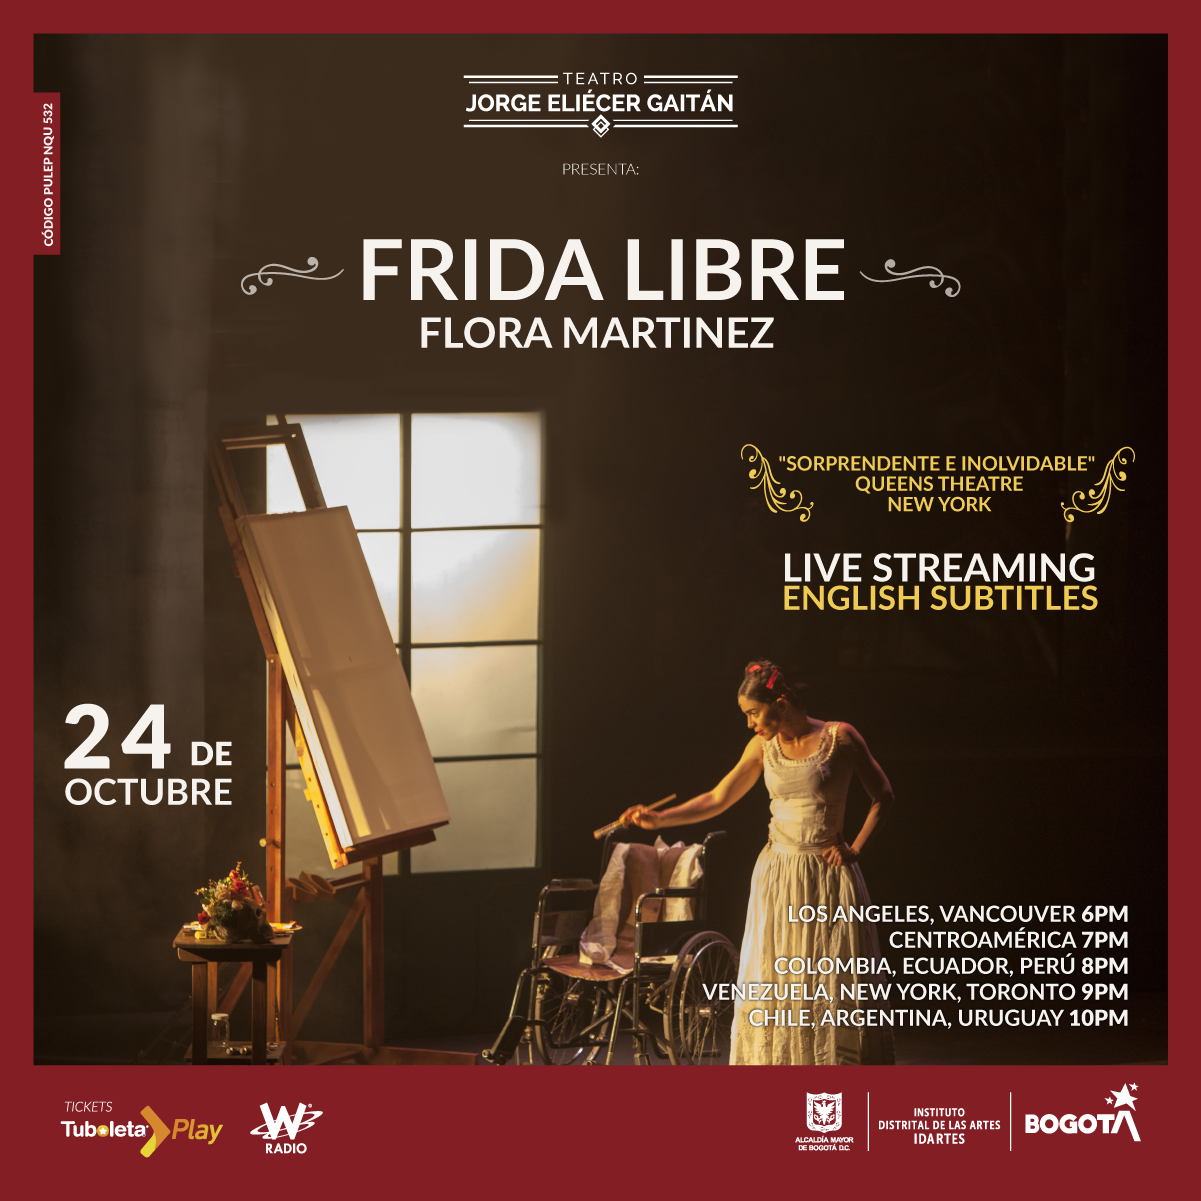 Flora Martínez estrena versión de Frida Libre para el Gaitán 